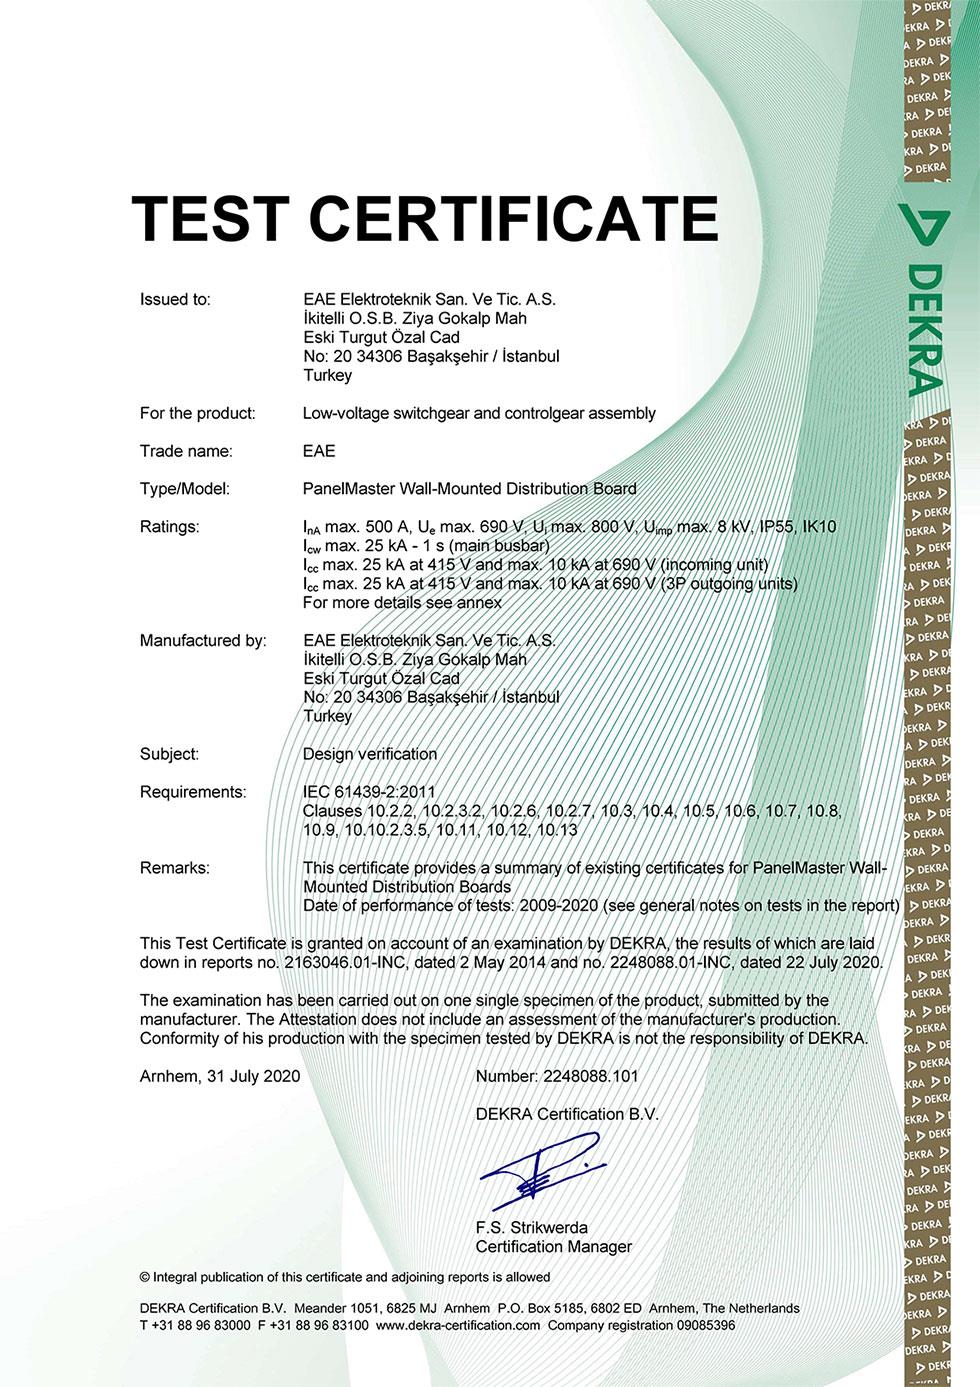 PanelMaster EE IEC 61439 1 2 Type Test Certificate